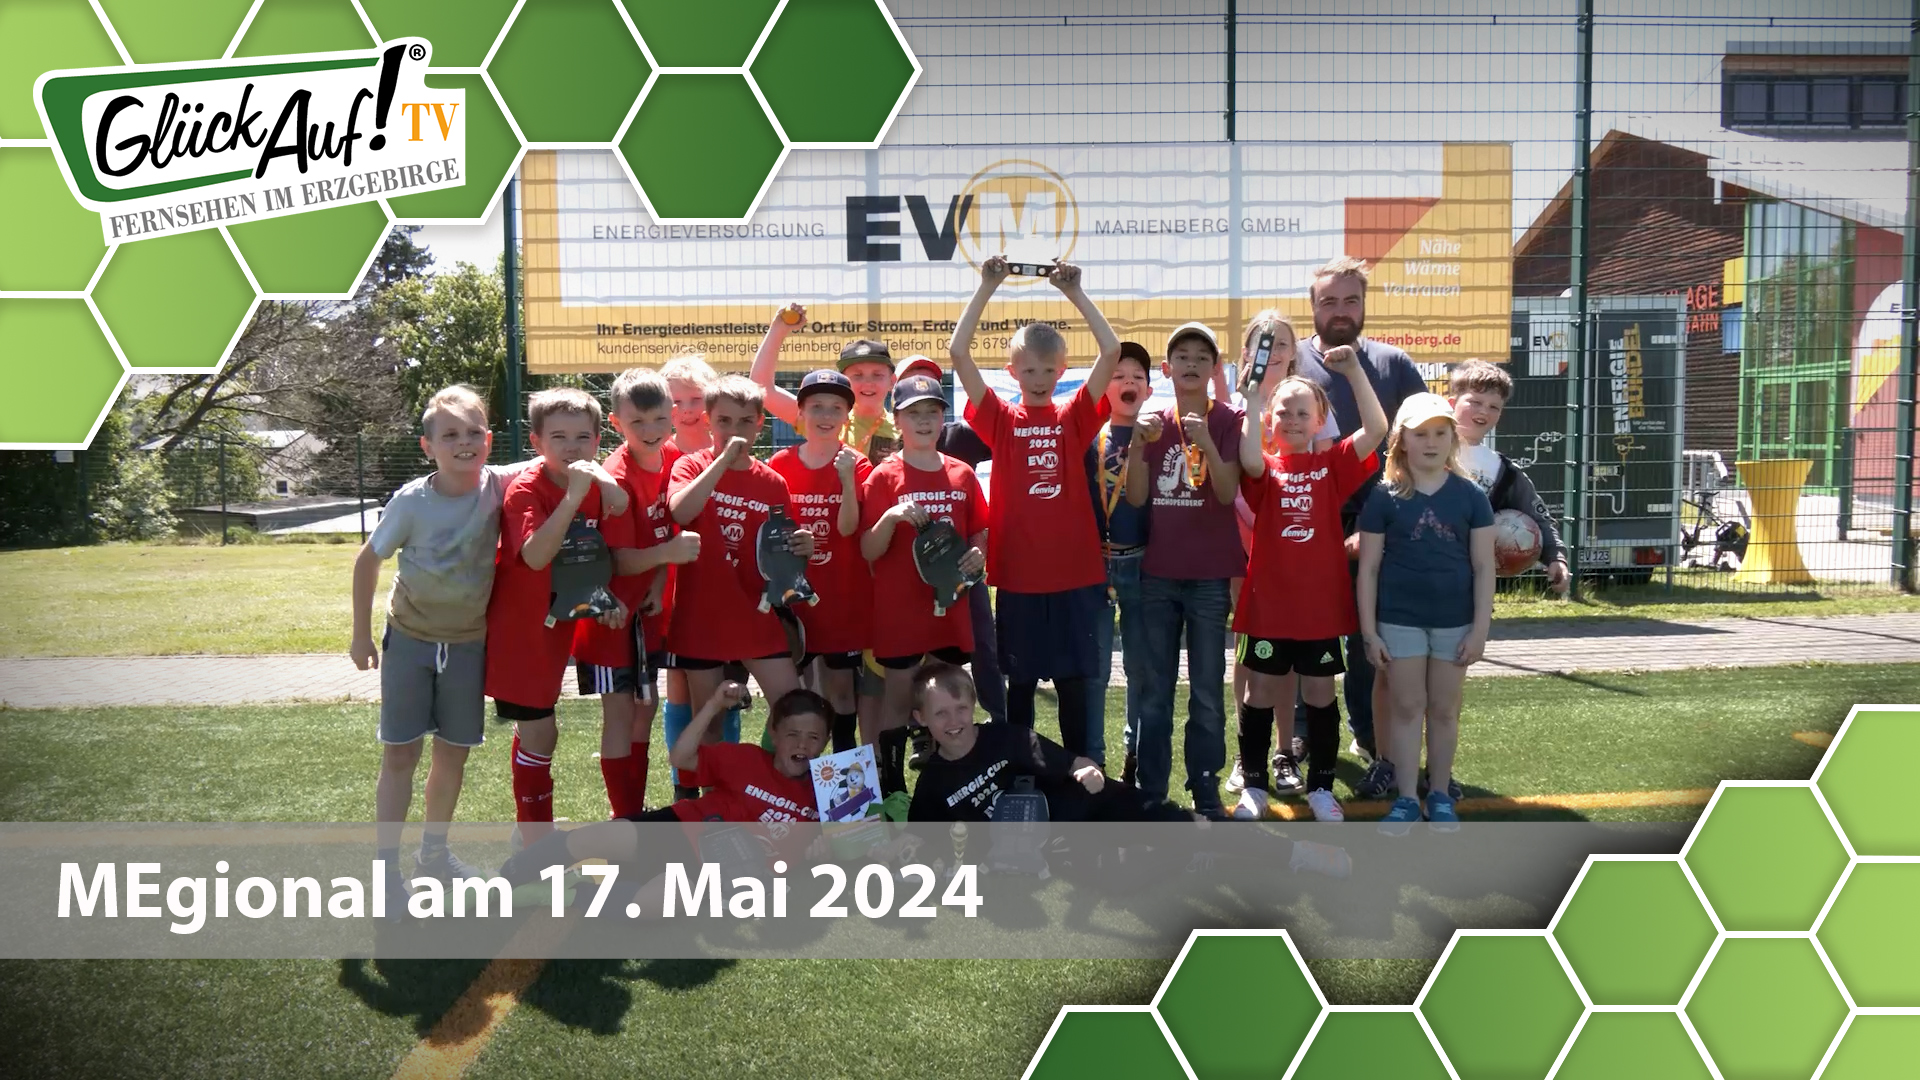 MEgional am 17. Mai 2024 mit dem Fußballturnier des Energiecups in Marienberg 